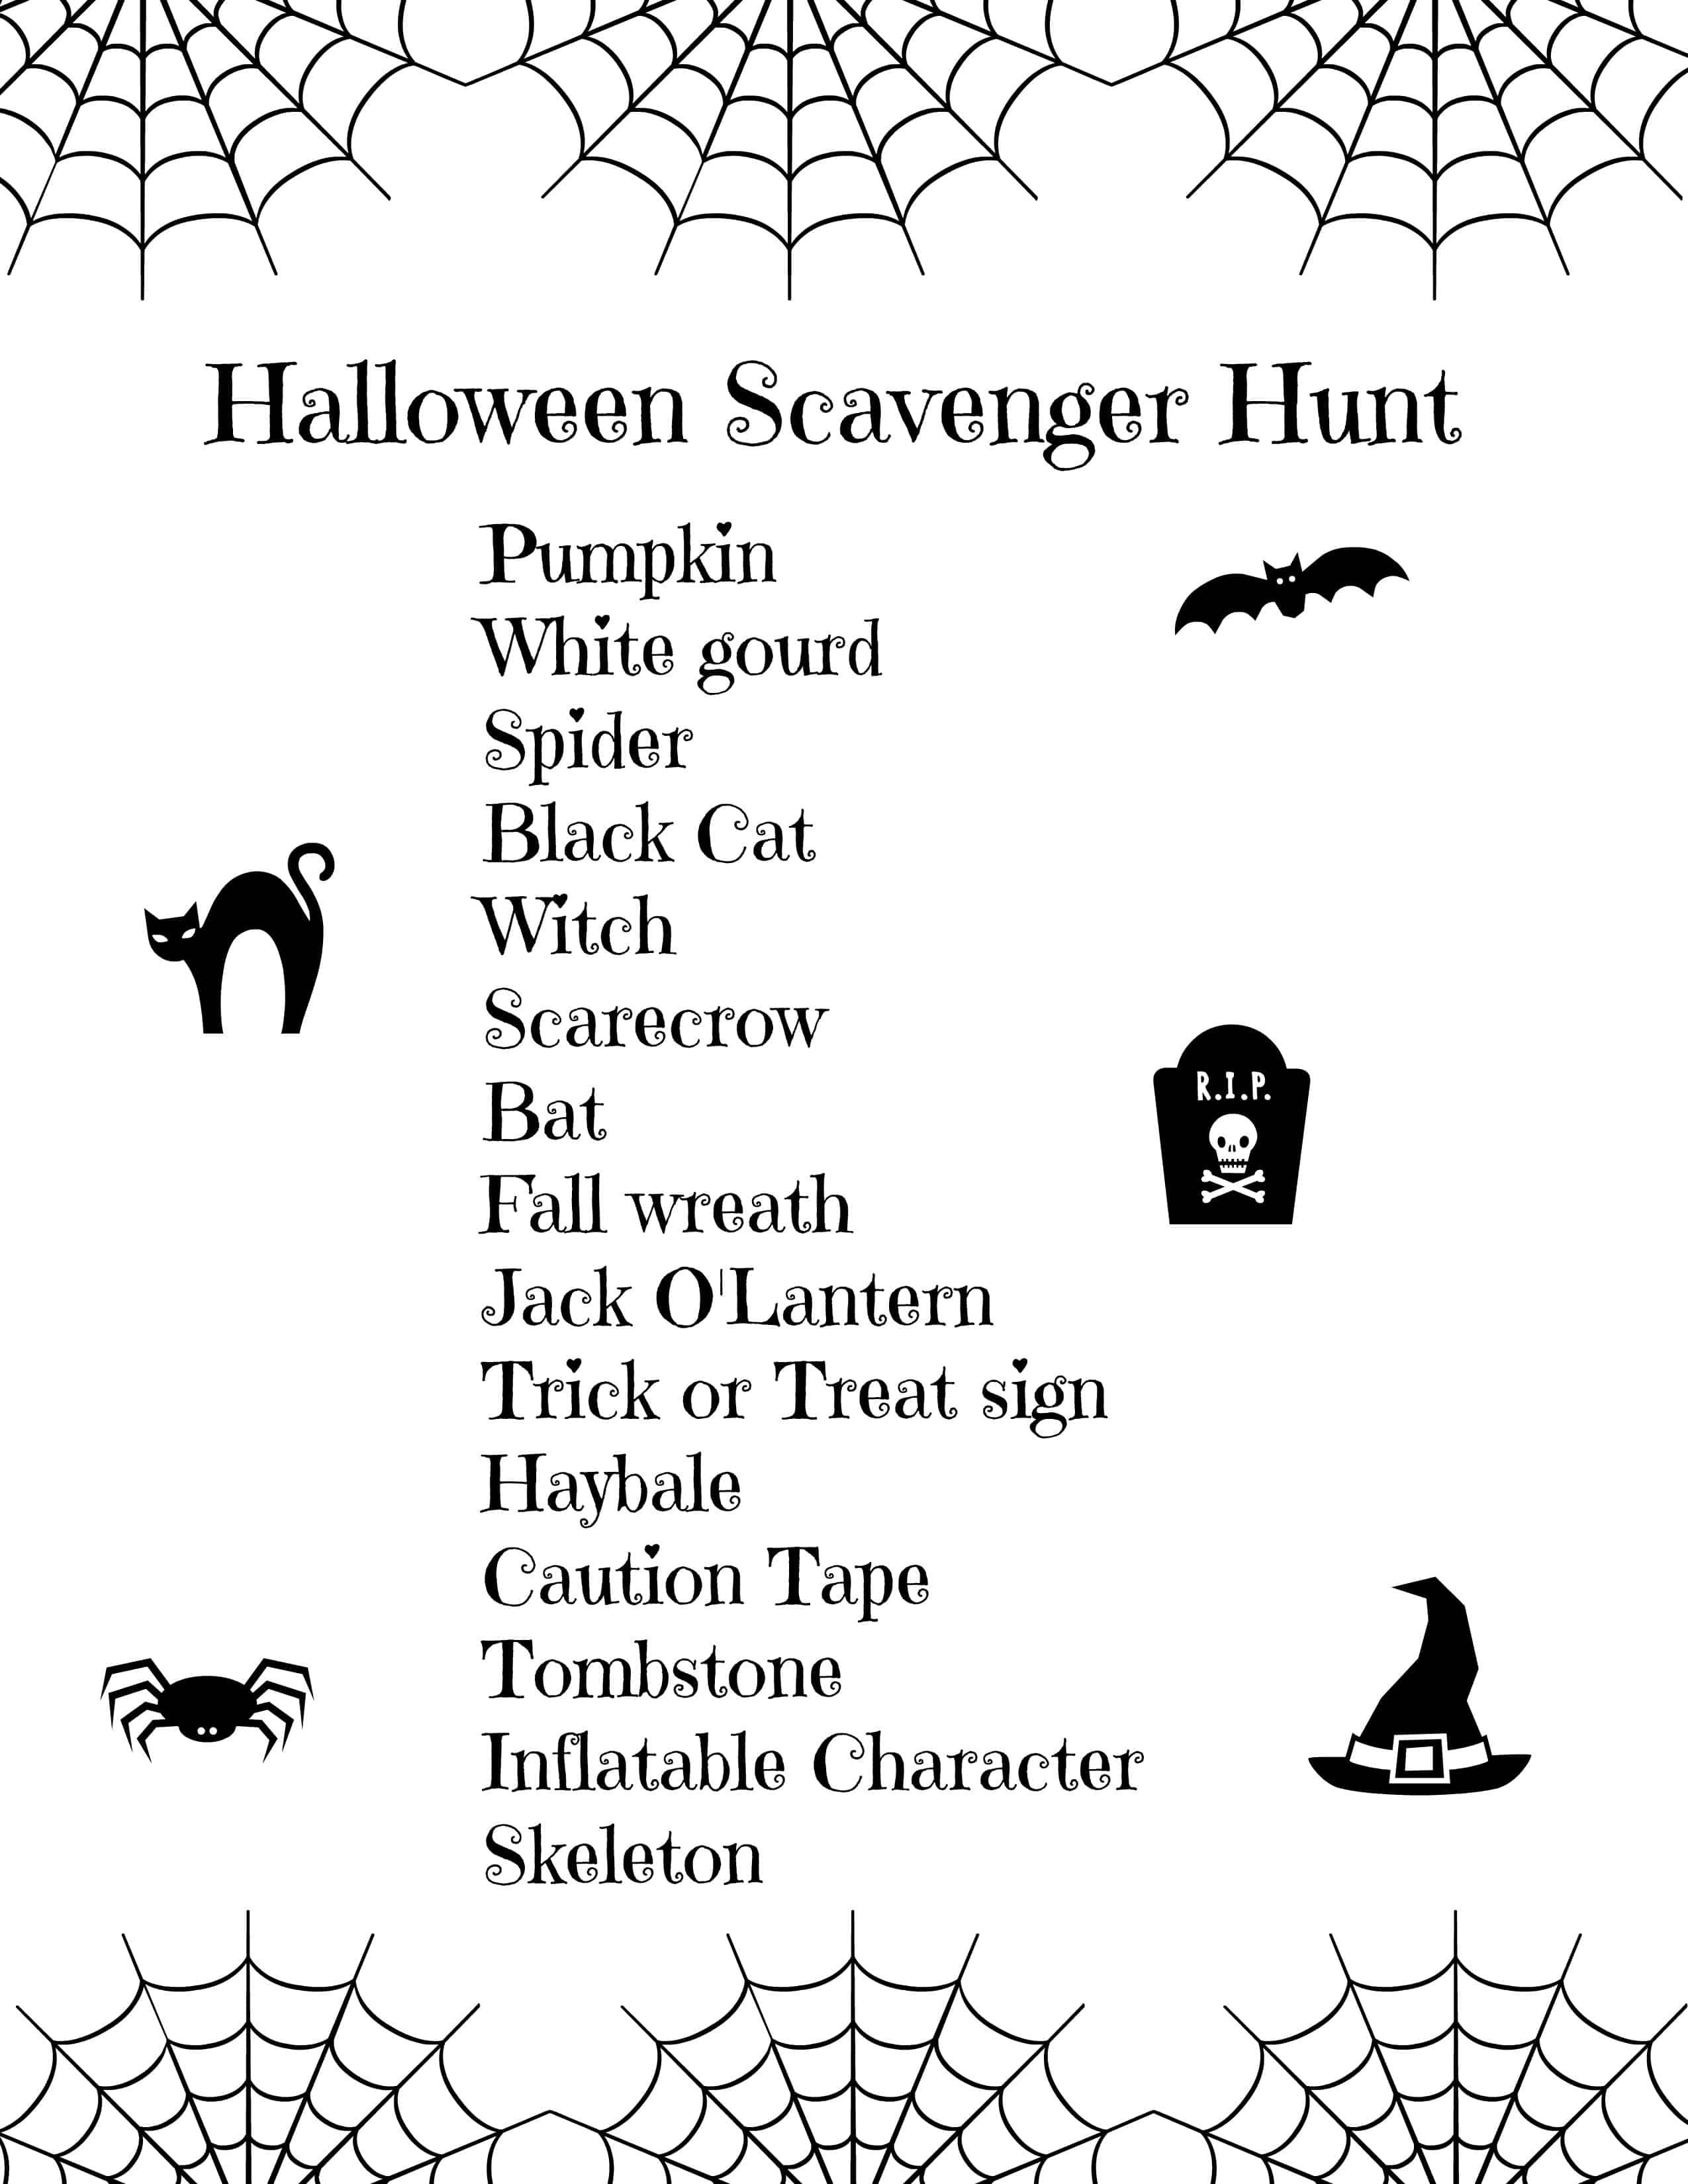 Halloween Scavenger Hunt For Kids (Free Printable) - Free Printable Halloween Scavenger Hunt